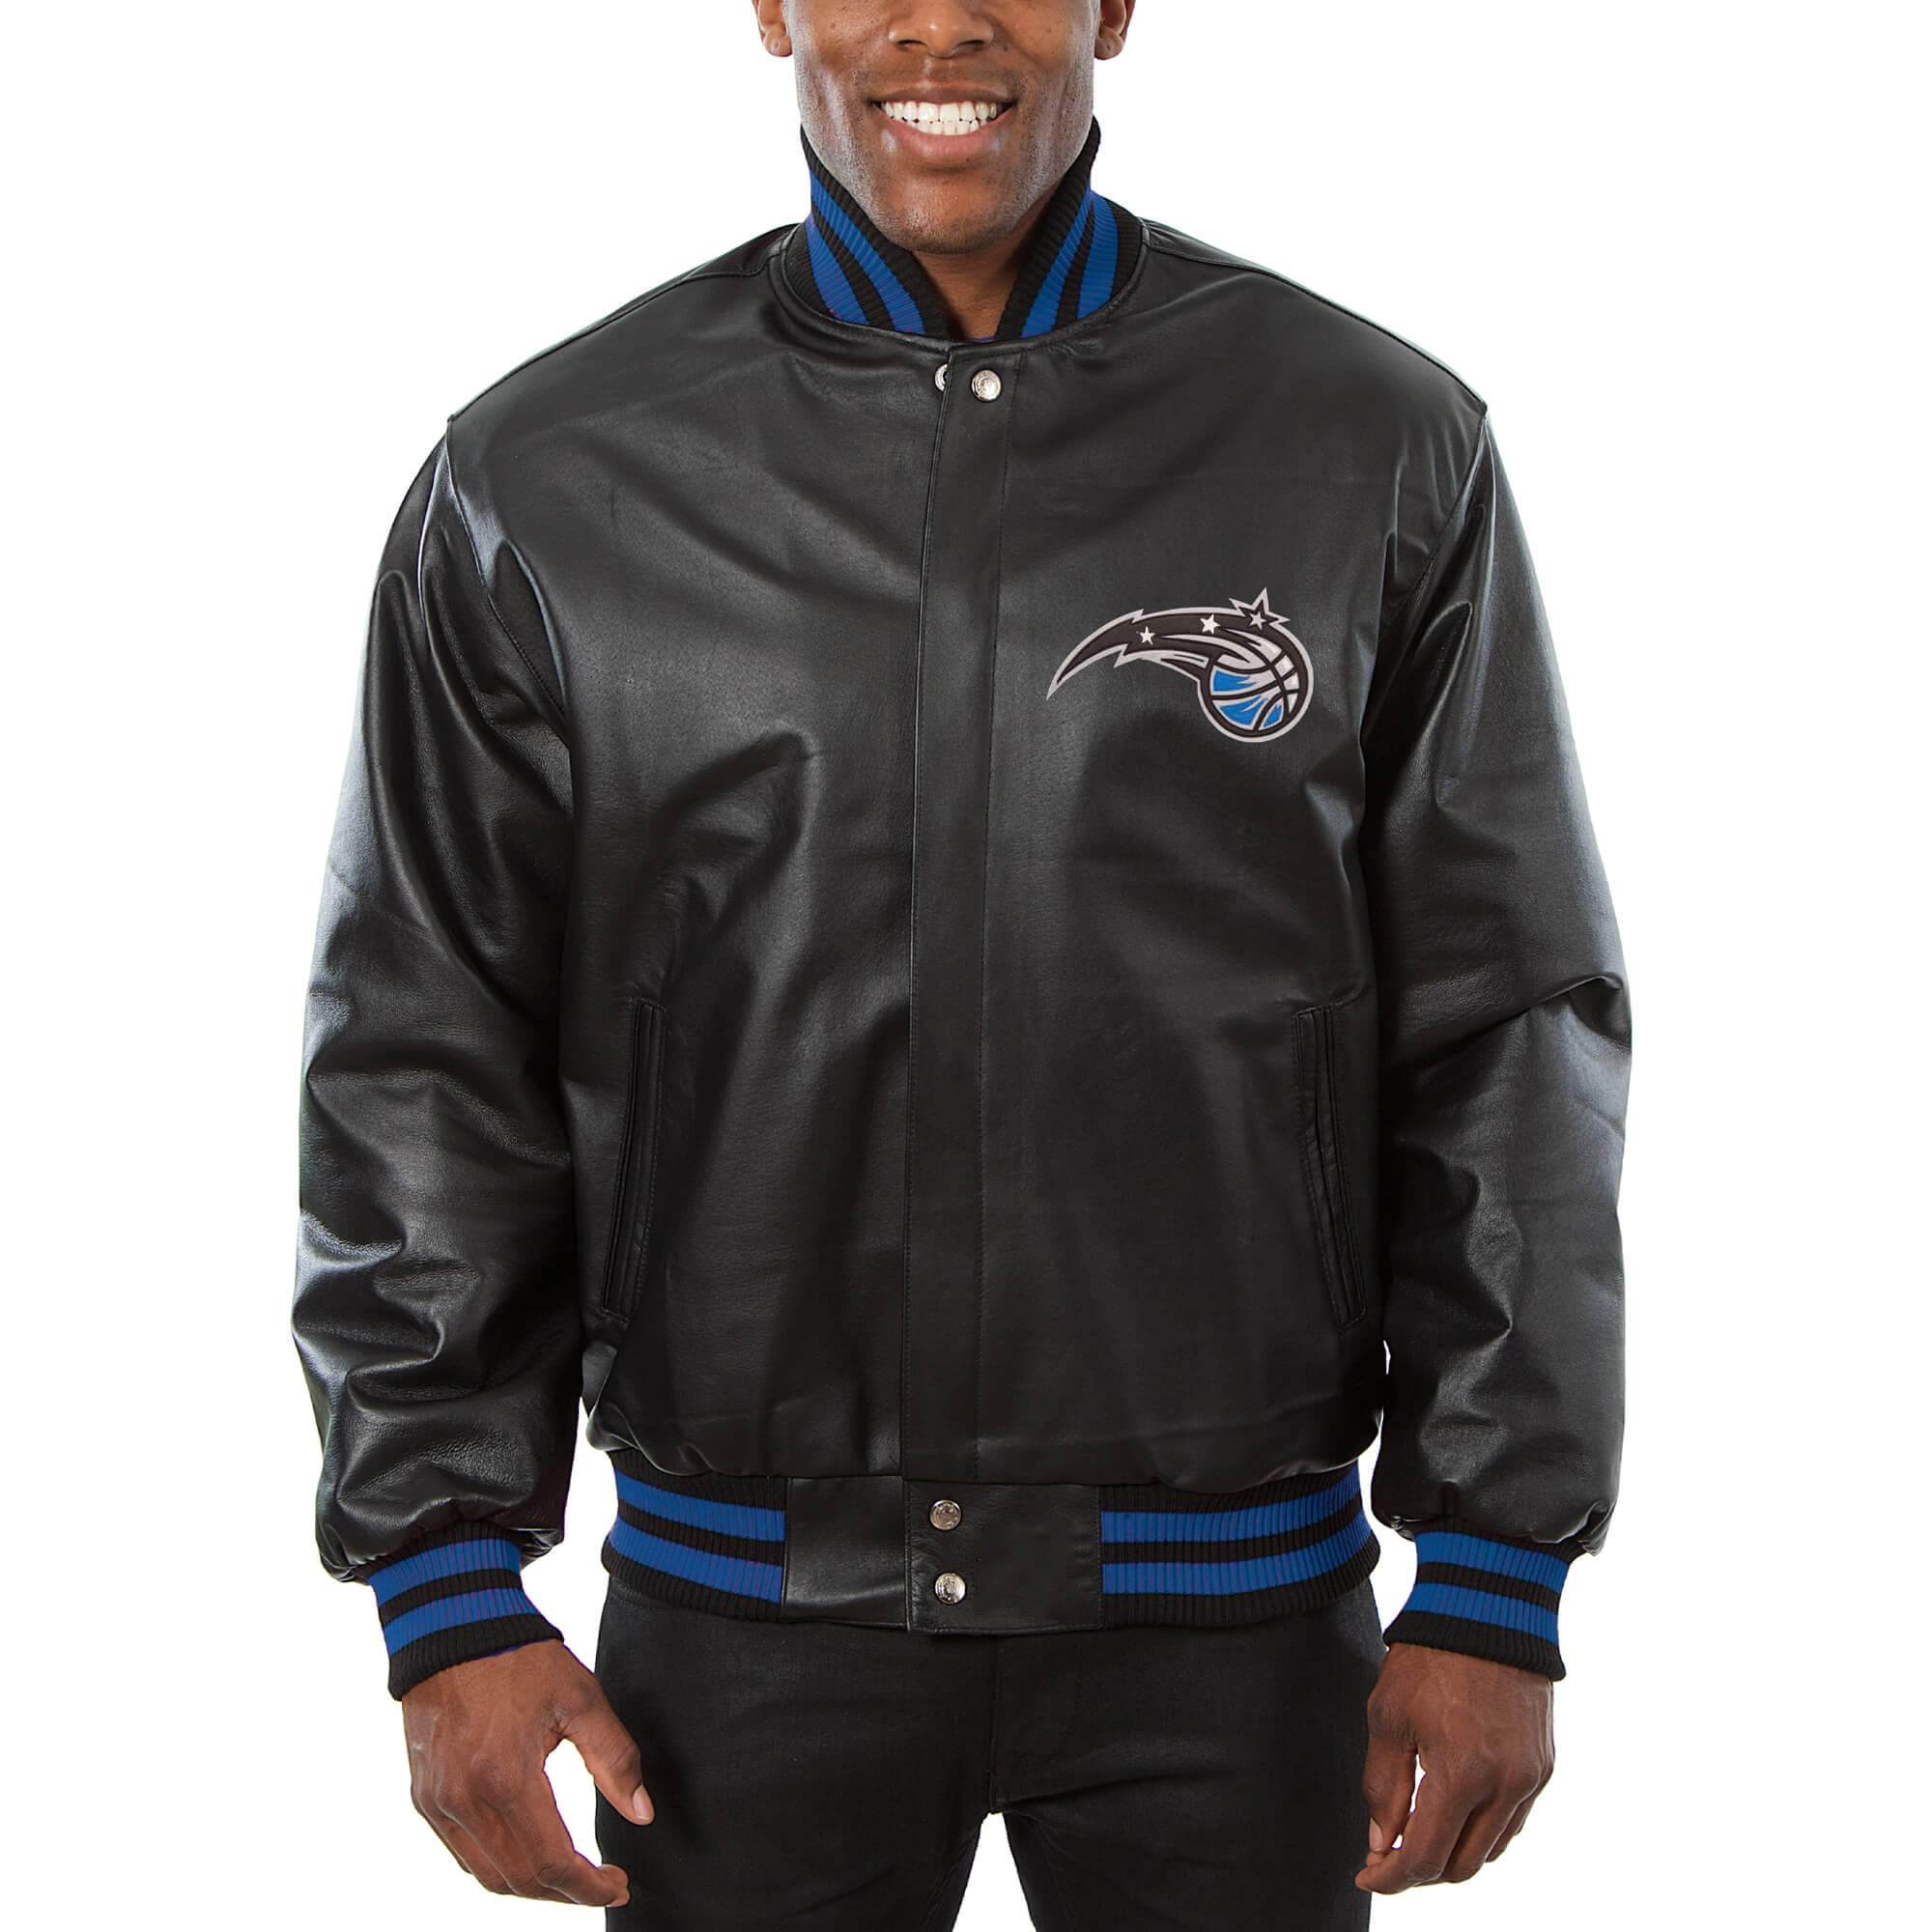 Pro Player, Jackets & Coats, Orlando Magic Leather Jacket